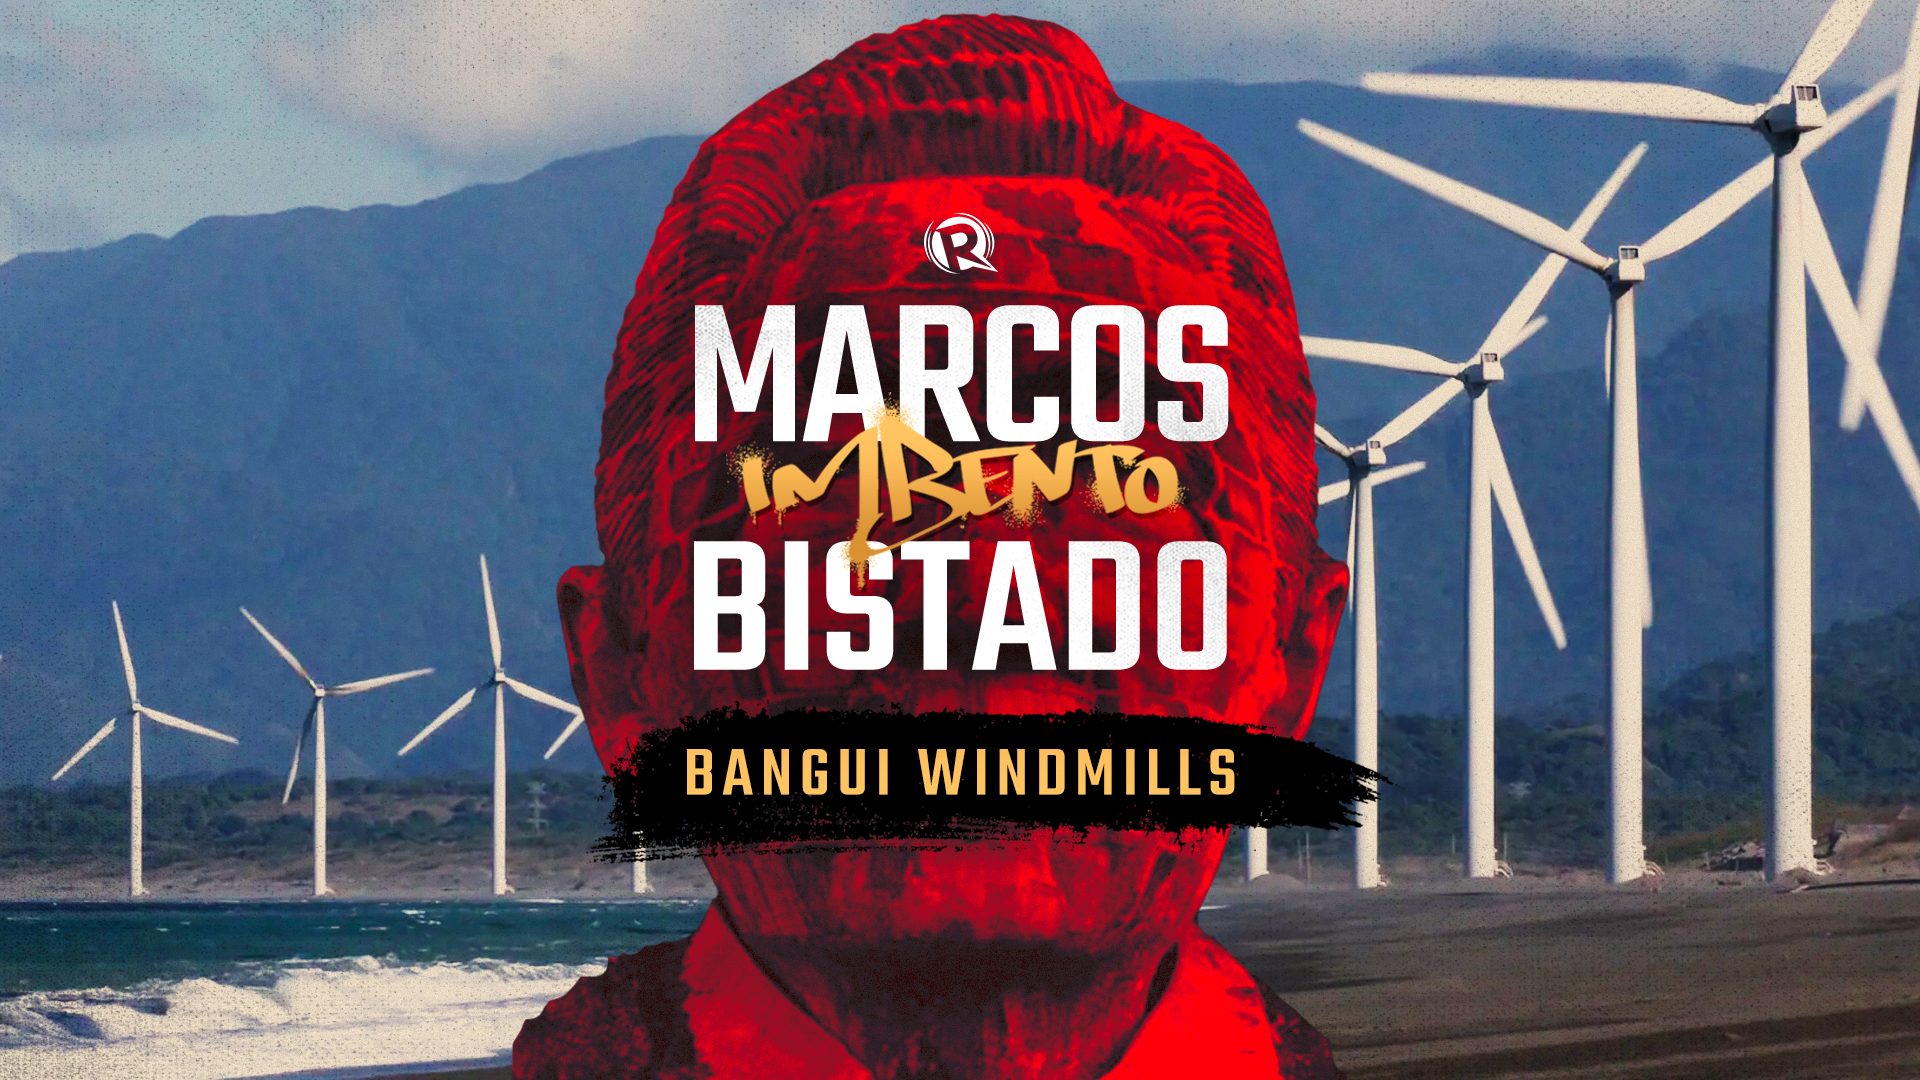 Marcos Imbento, Bistado: Hindi proyekto ni Marcos Jr. ang Bangui windmills